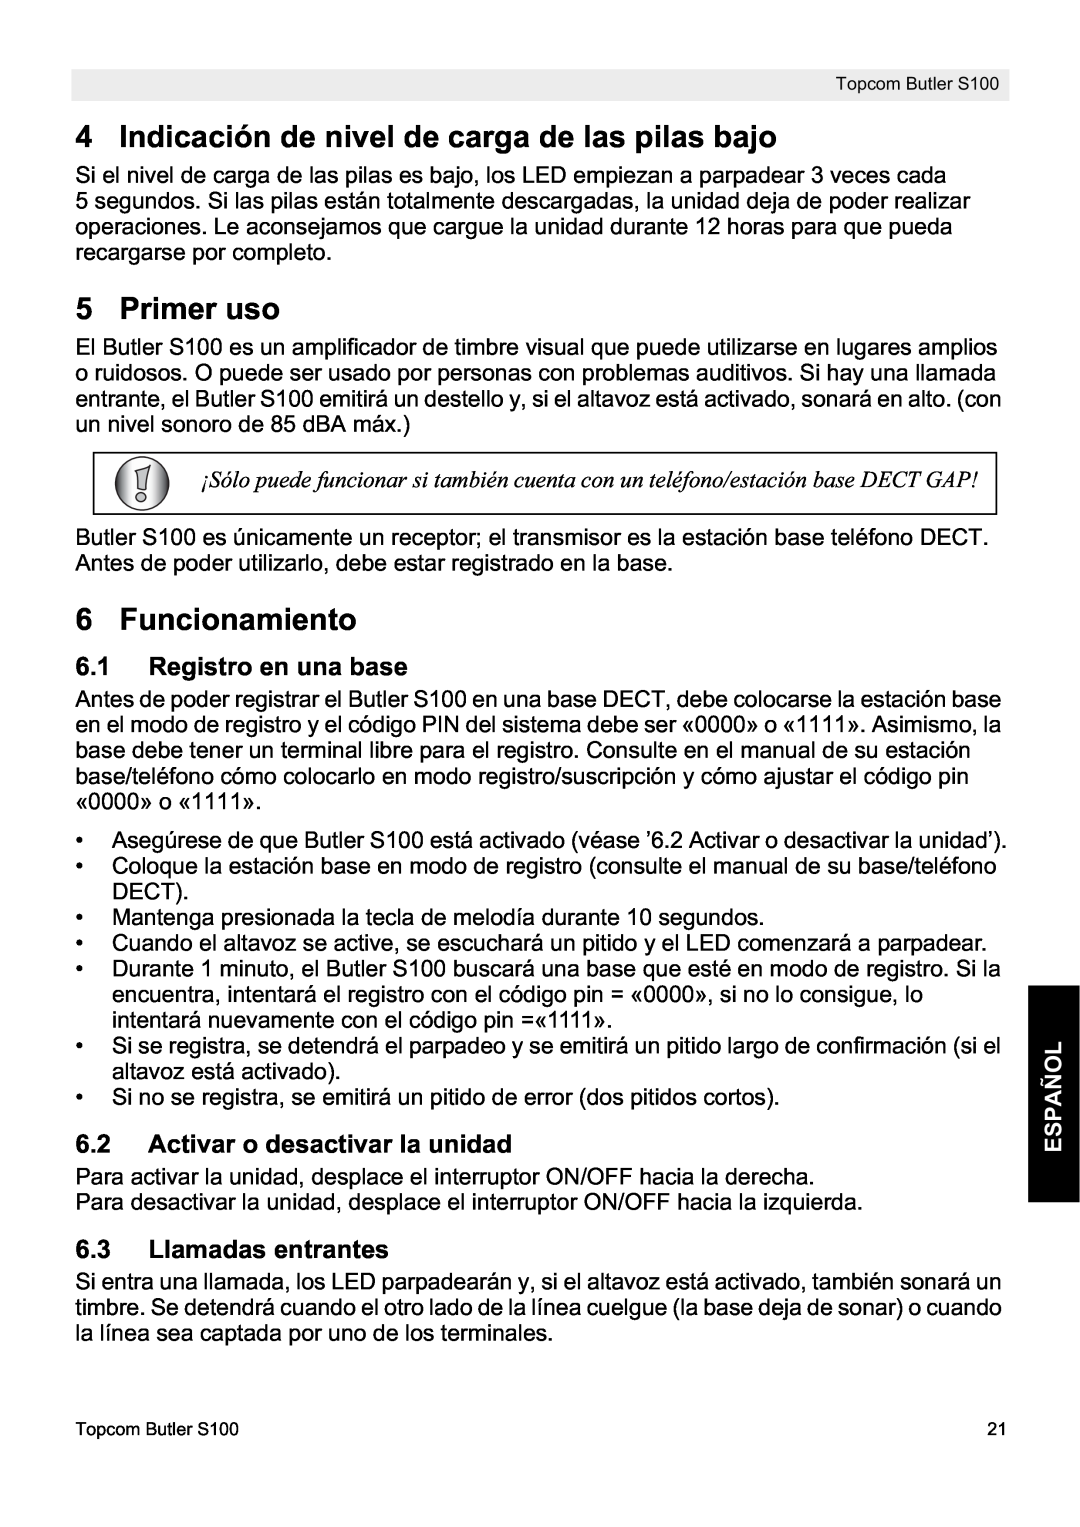 Topcom S100 Indicación de nivel de carga de las pilas bajo, Primer uso, Funcionamiento, Registro en una base, Español 